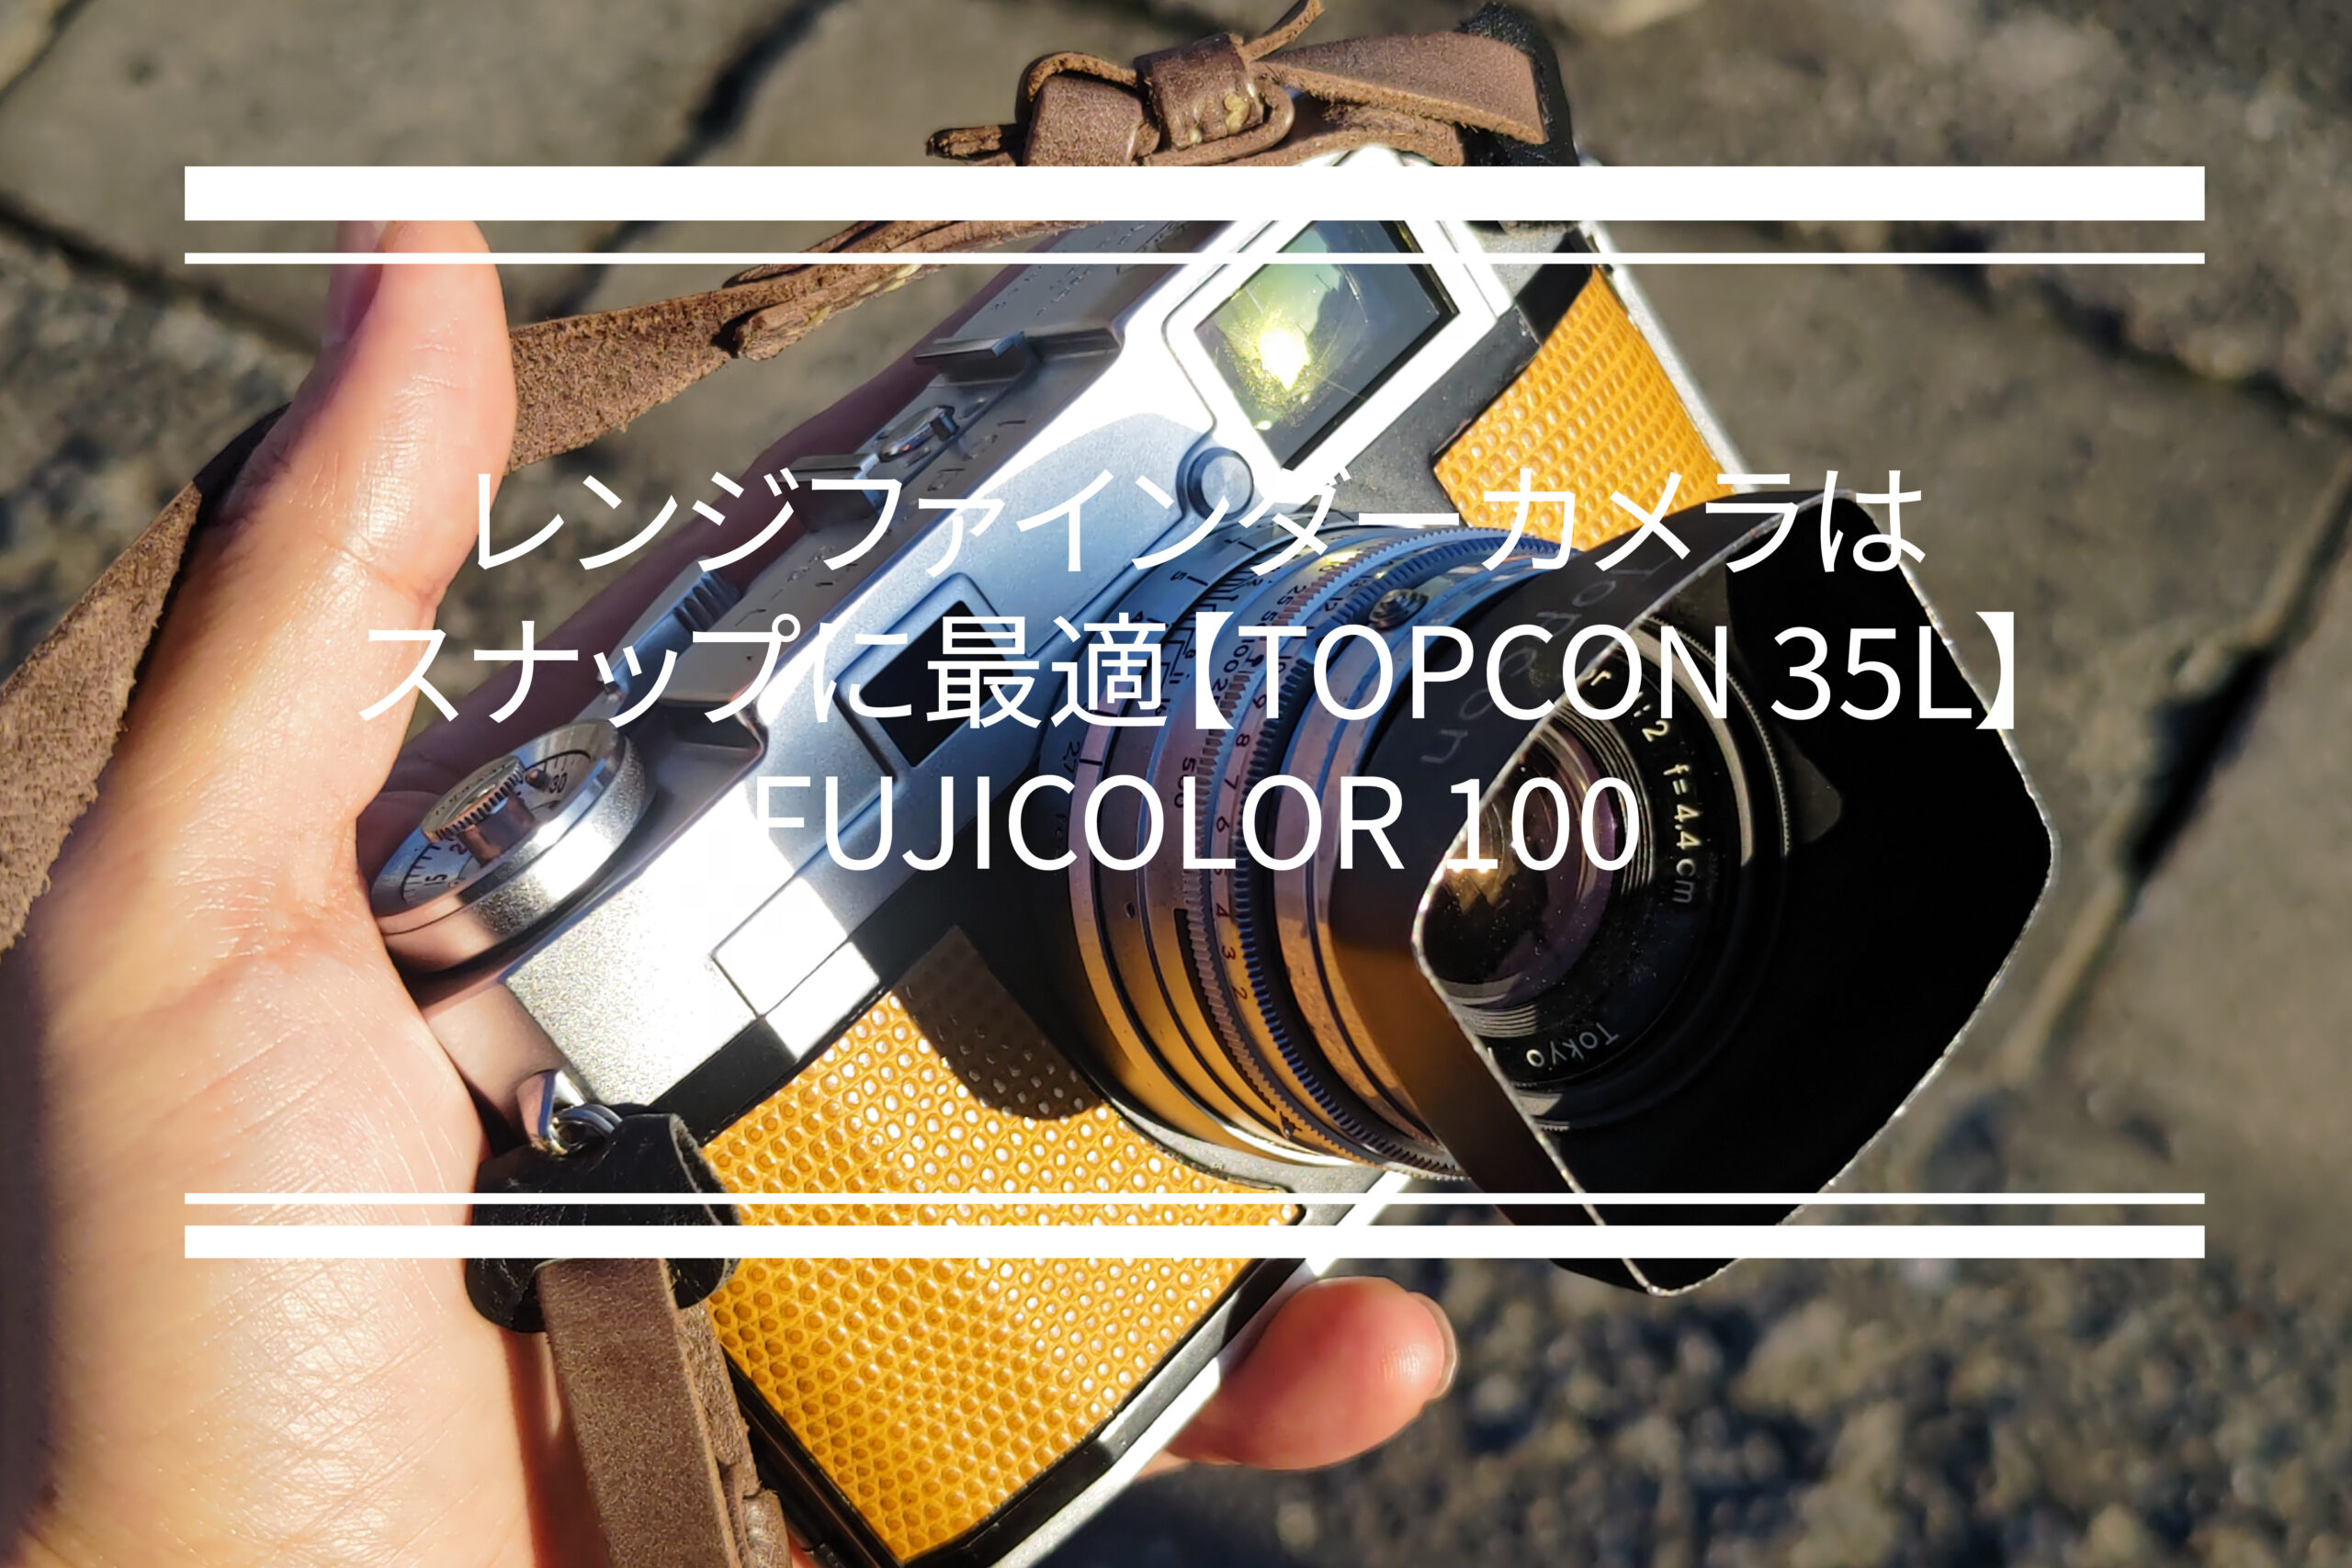 レンジファインダーカメラはスナップに最適という話【TOPCON 35L